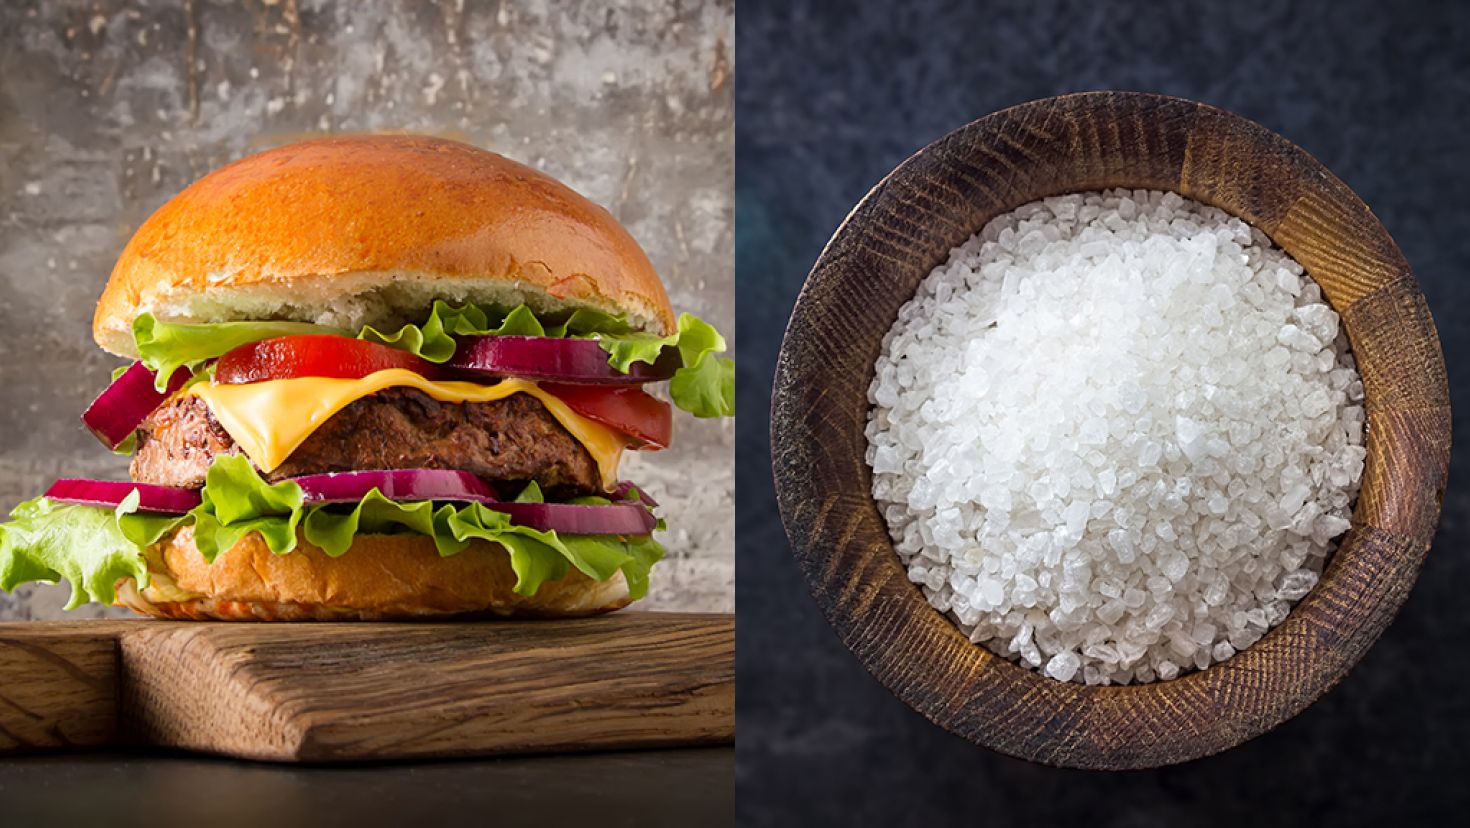 Salt in meat-free alternatives 